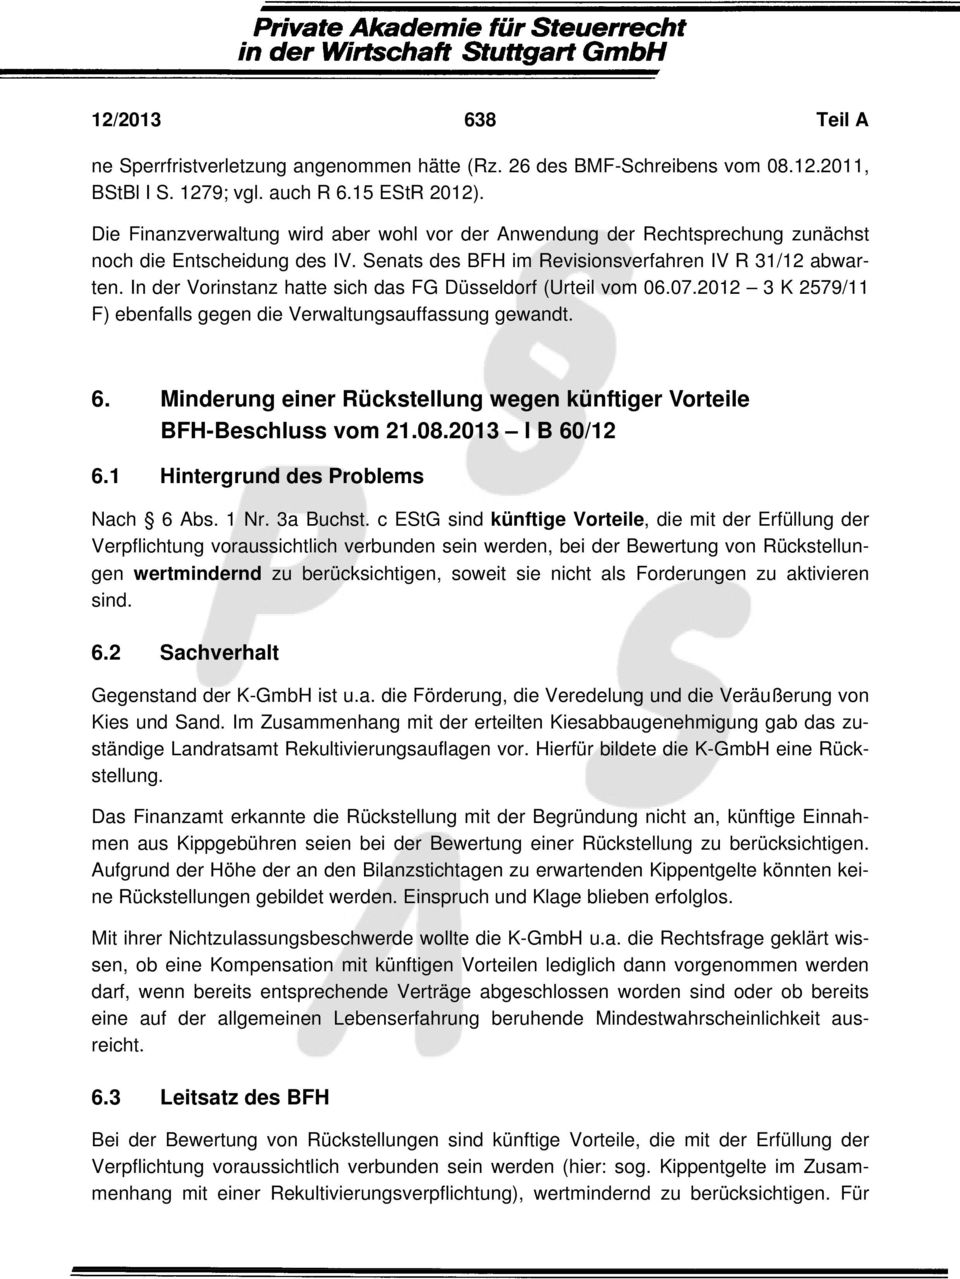 In der Vorinstanz hatte sich das FG Düsseldorf (Urteil vom 06.07.2012 3 K 2579/11 F) ebenfalls gegen die Verwaltungsauffassung gewandt. 6.